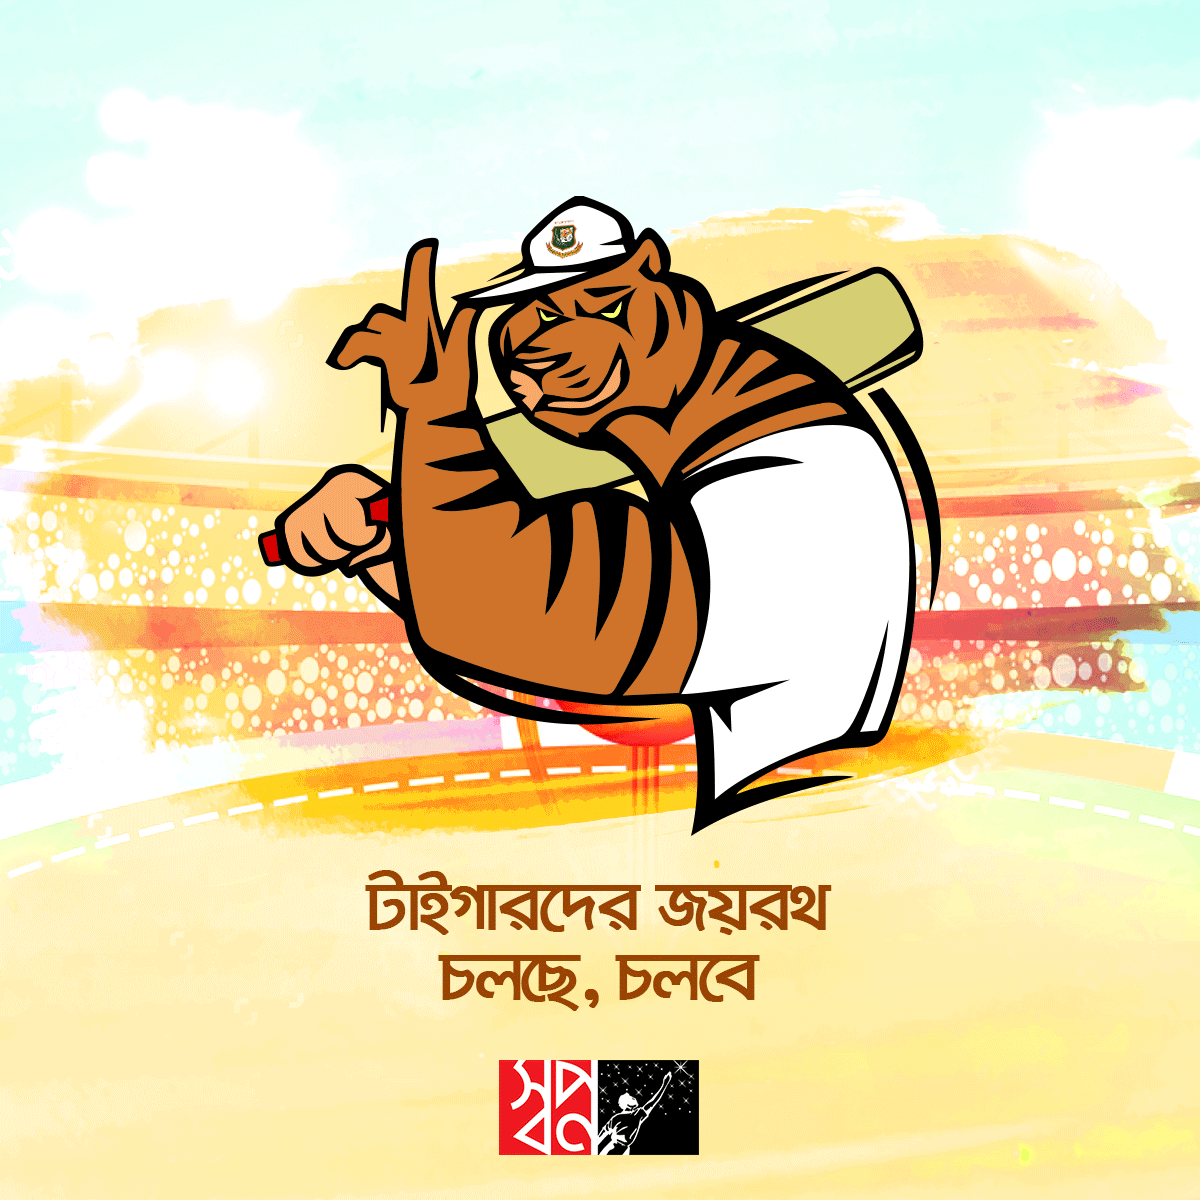 Shwapno super market Bangladesh social media ad clean Cricket